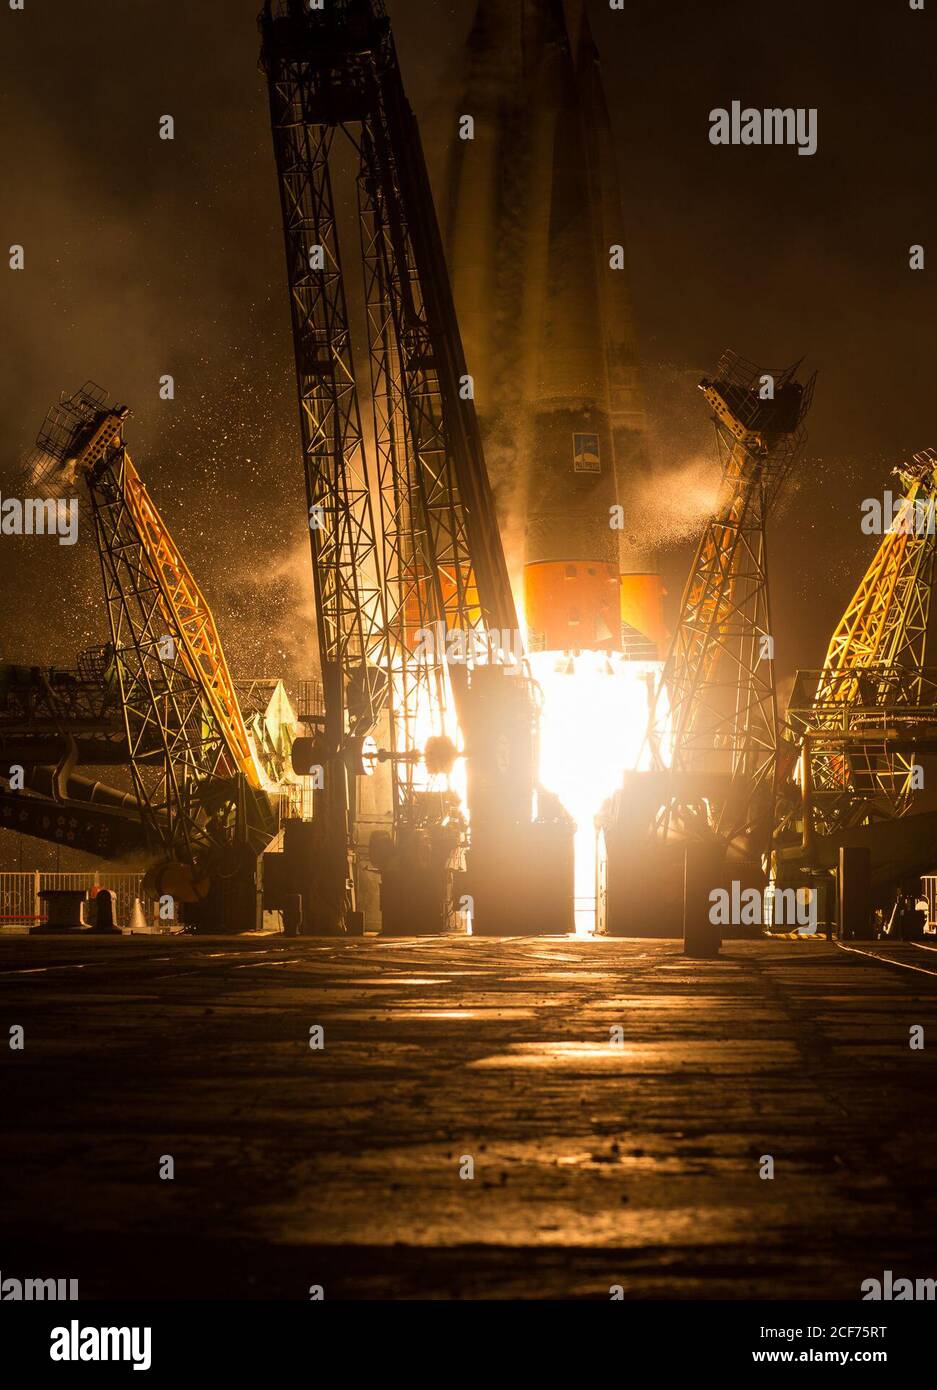 Il razzo Soyuz TMA-20M viene lanciato dal Cosmodromo di Baikonur in Kazakistan sabato 19 marzo 2016 portando la spedizione 47 il comandante di Soyuz Alexey Ovchinin di Roscosmos, ingegnere di volo Jeff Williams della NASA, E l'ingegnere di volo Oleg Skripochka di Roscosmo in orbita per iniziare la loro missione di cinque mesi e mezzo sulla Stazione spaziale Internazionale. (Foto: NASA/Aubrey Gemignani) Foto Stock